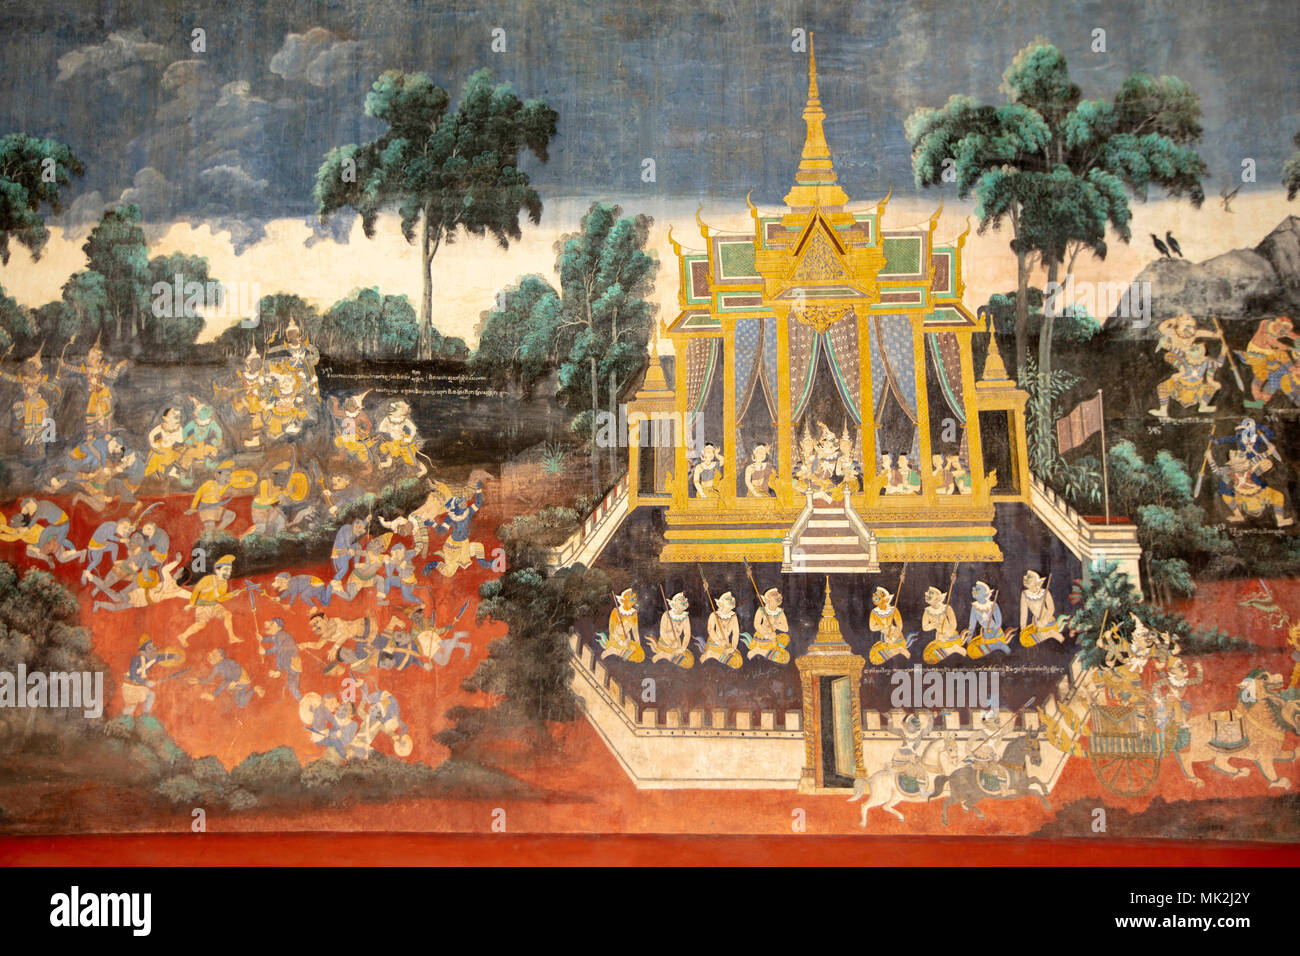 Cambodge, Phnom Penh, Palais Royal Et Pagode D'Argent. Détail du Reamker, un poème épique cambodgien basé sur l'épopée indienne Ramayana Banque D'Images